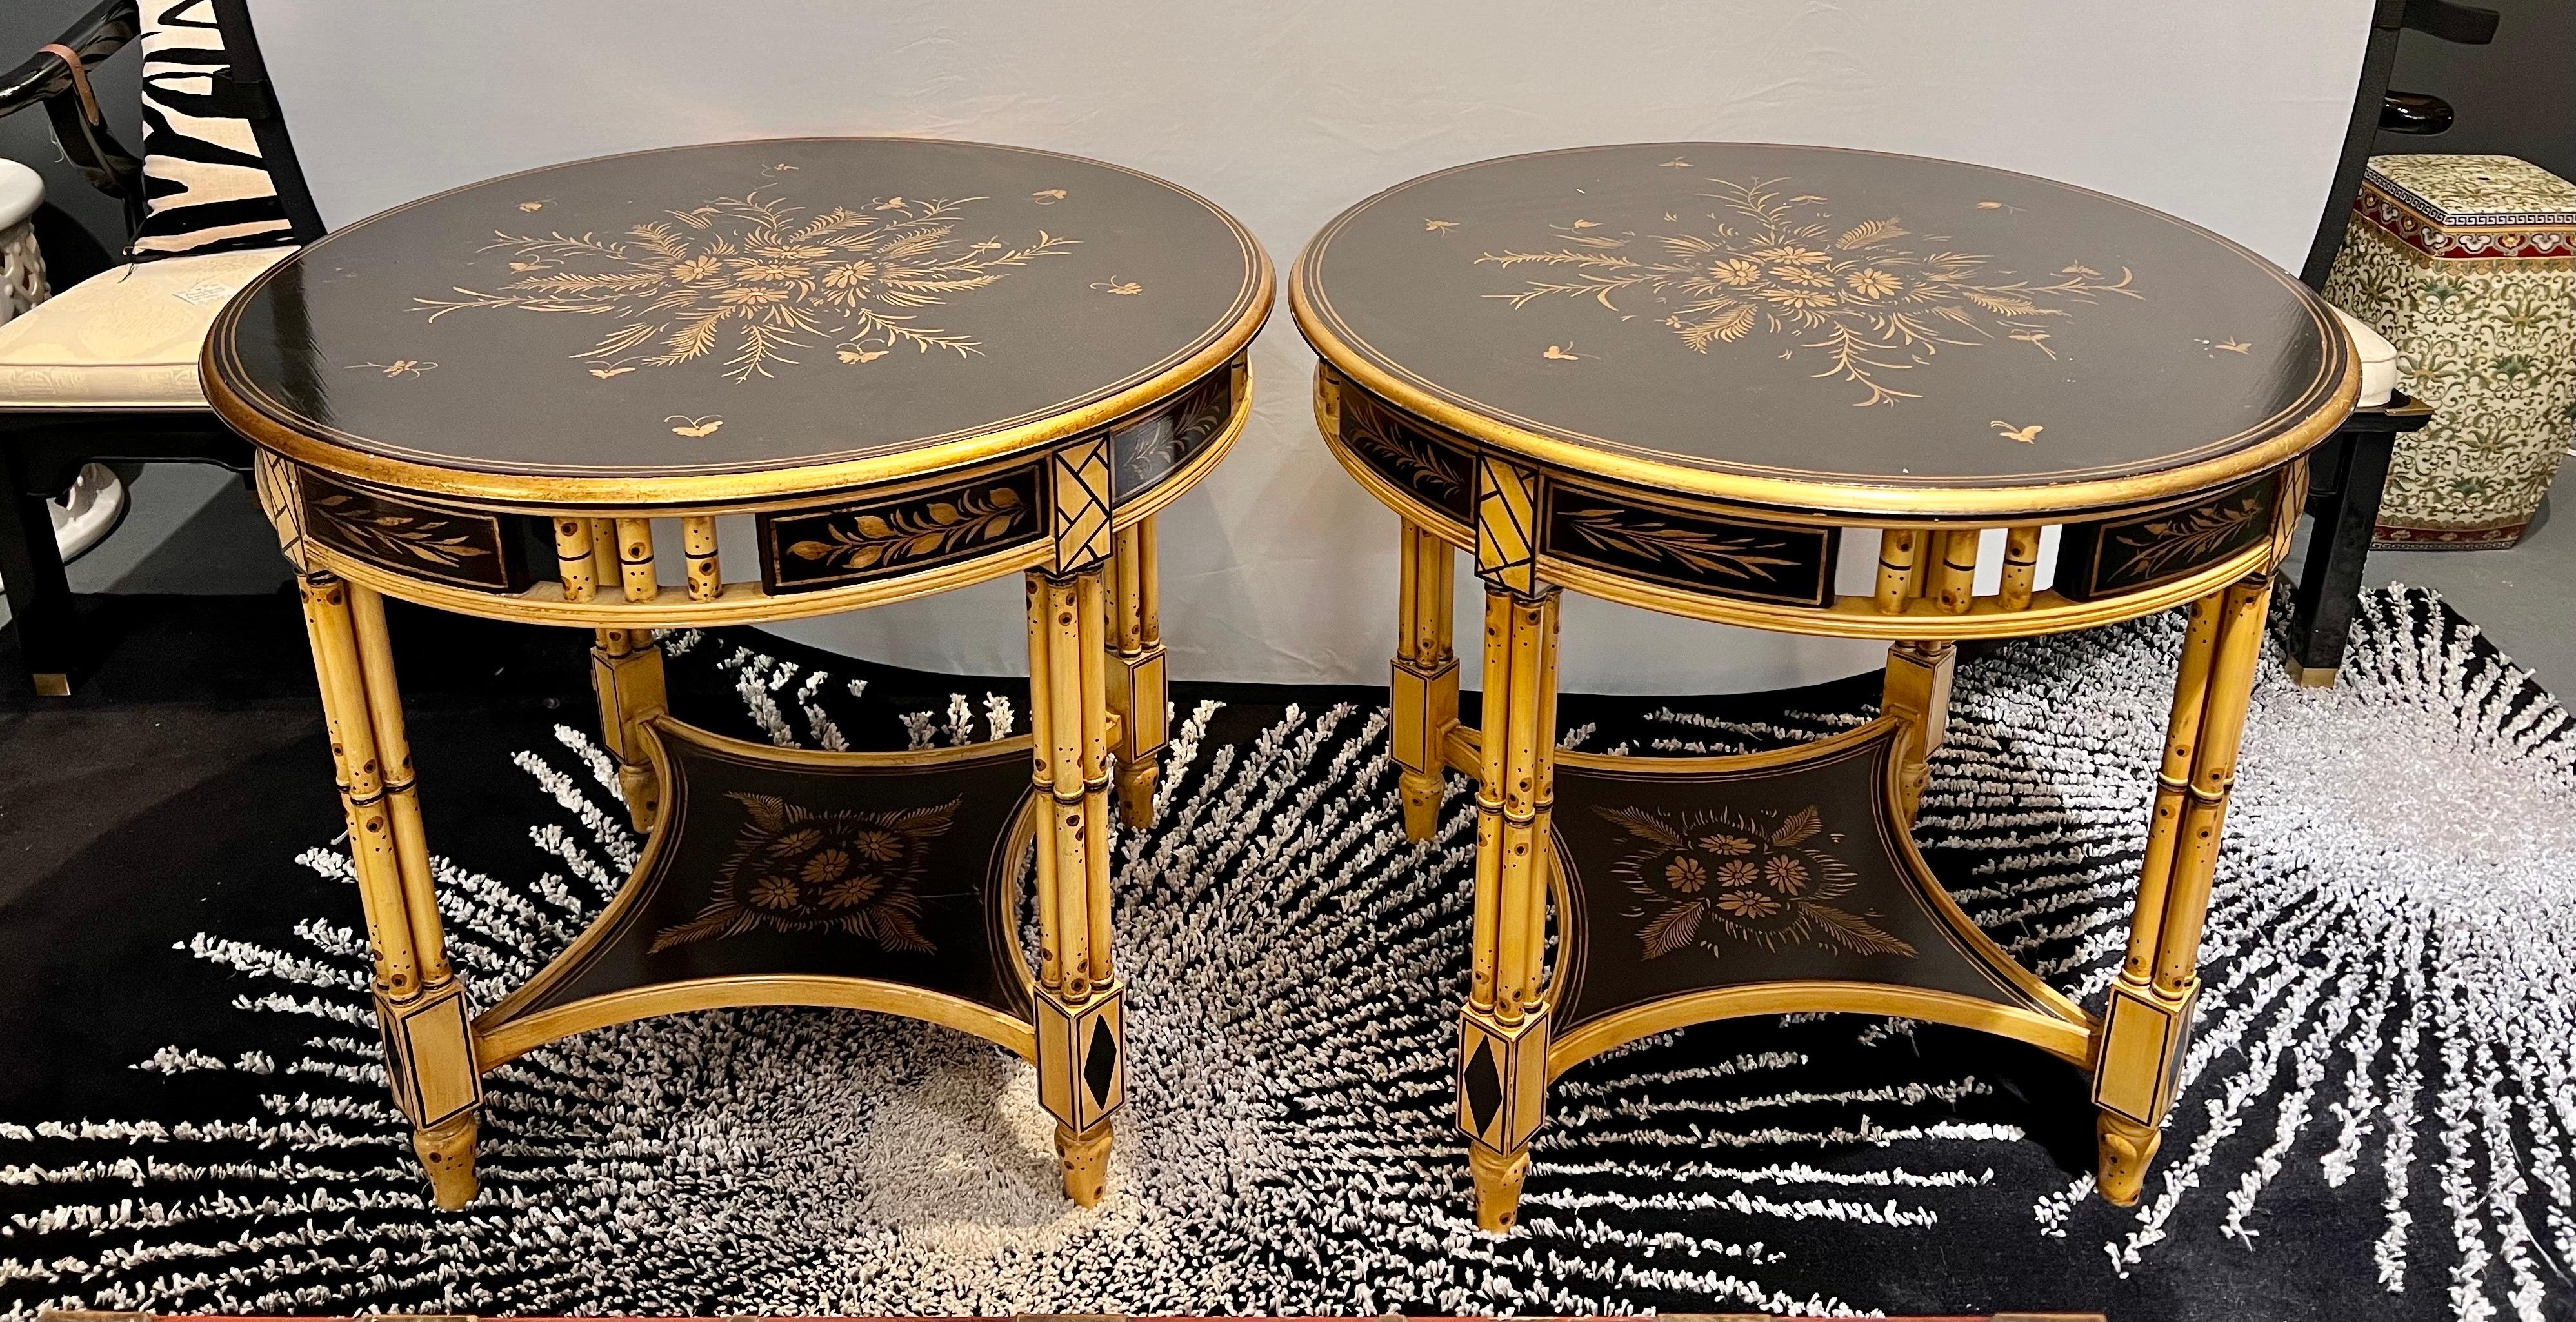 Zwei schöne Beistelltische im Chinoiserie-Stil aus schwarzem Lack und Bambusimitat mit handgemalten, goldfarbenen Blumenmotiven auf der oberen und unteren Platte.